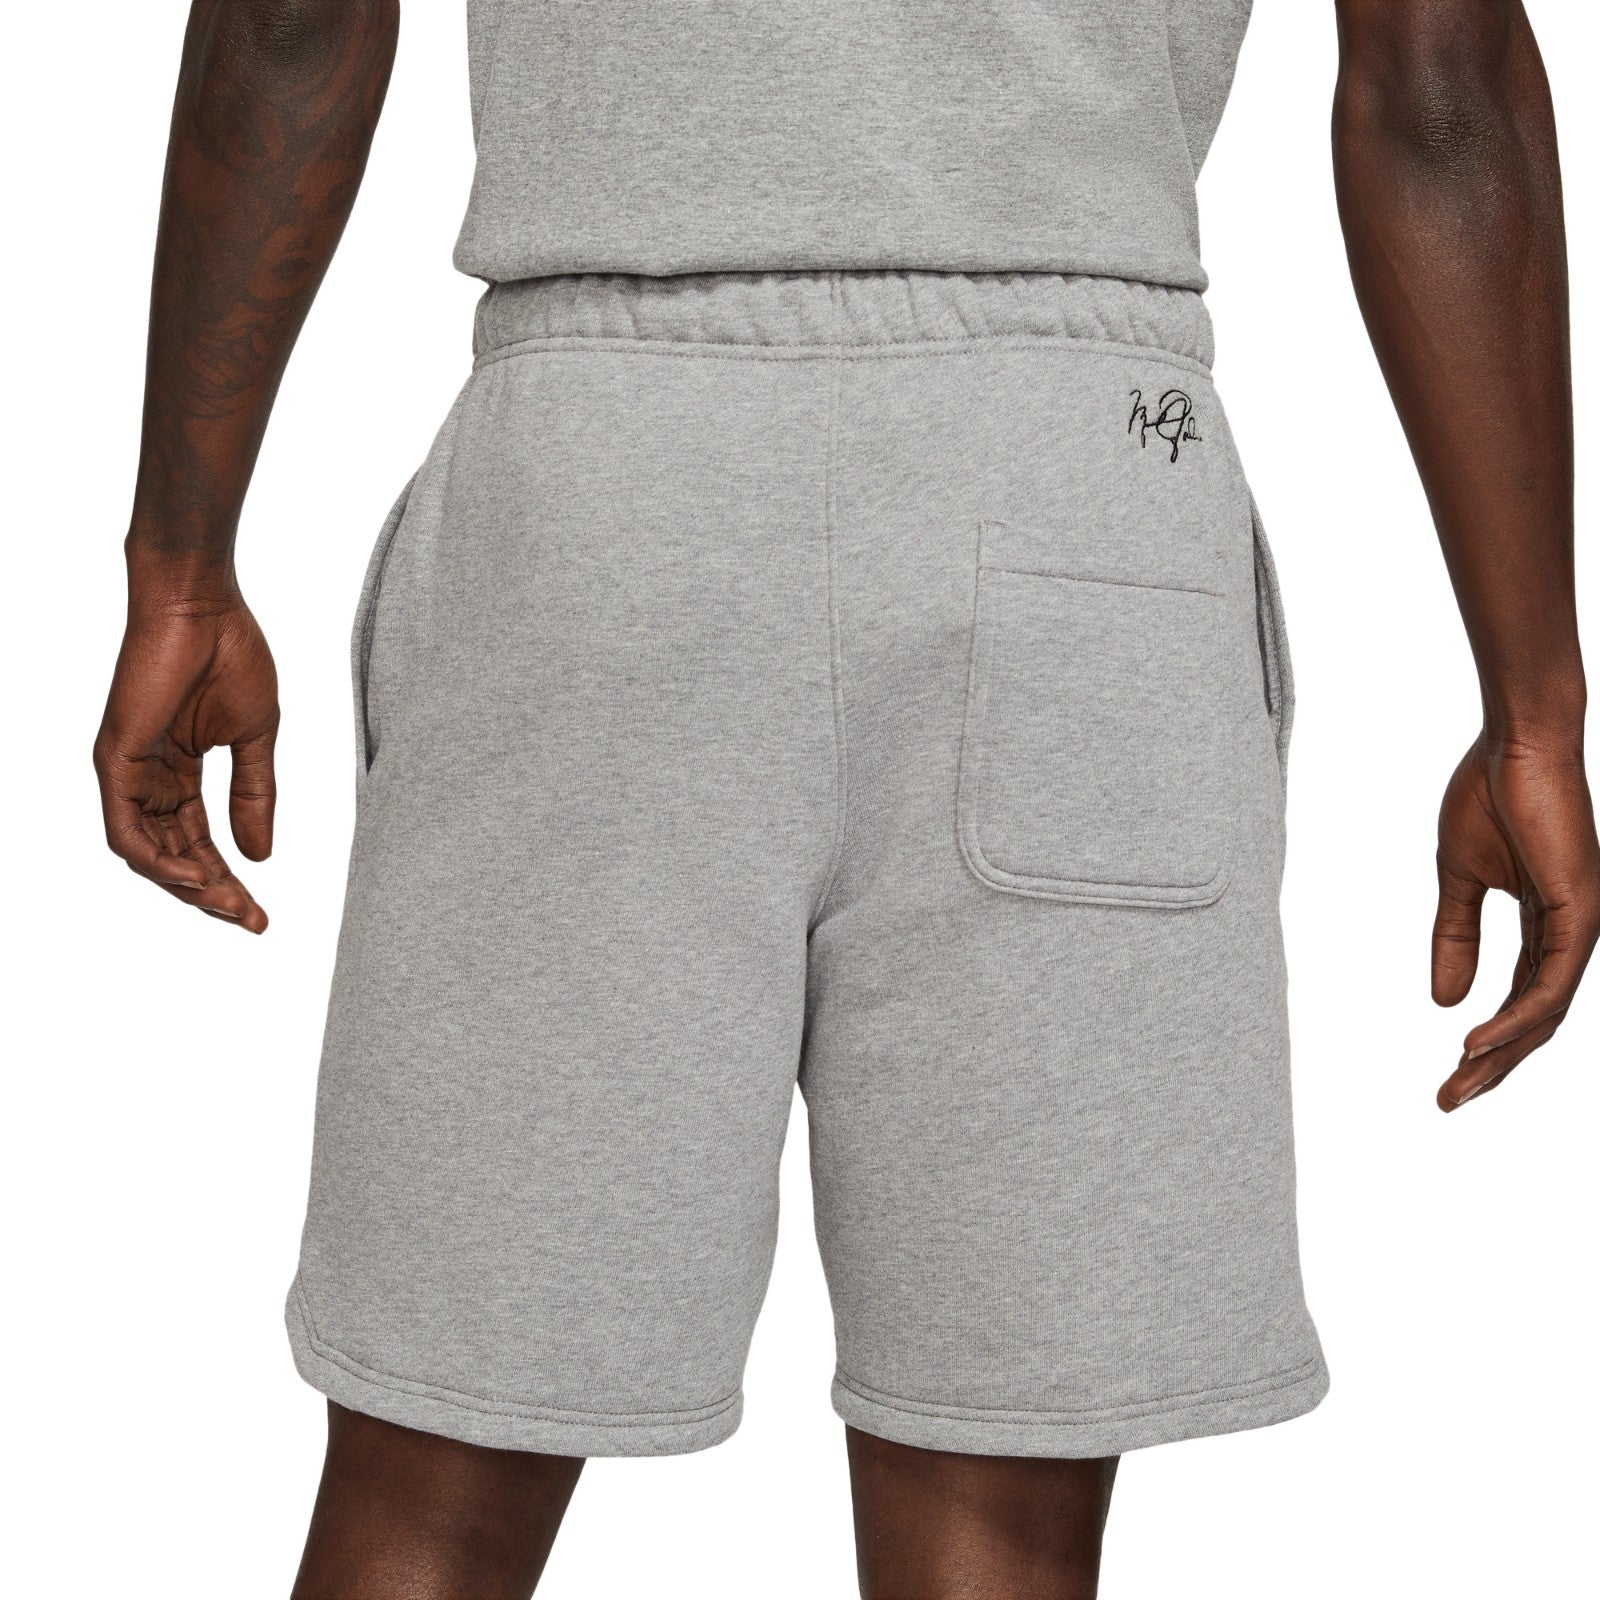 Pantalón Corto Hombre Nike Jordan Essentials DA9826-091